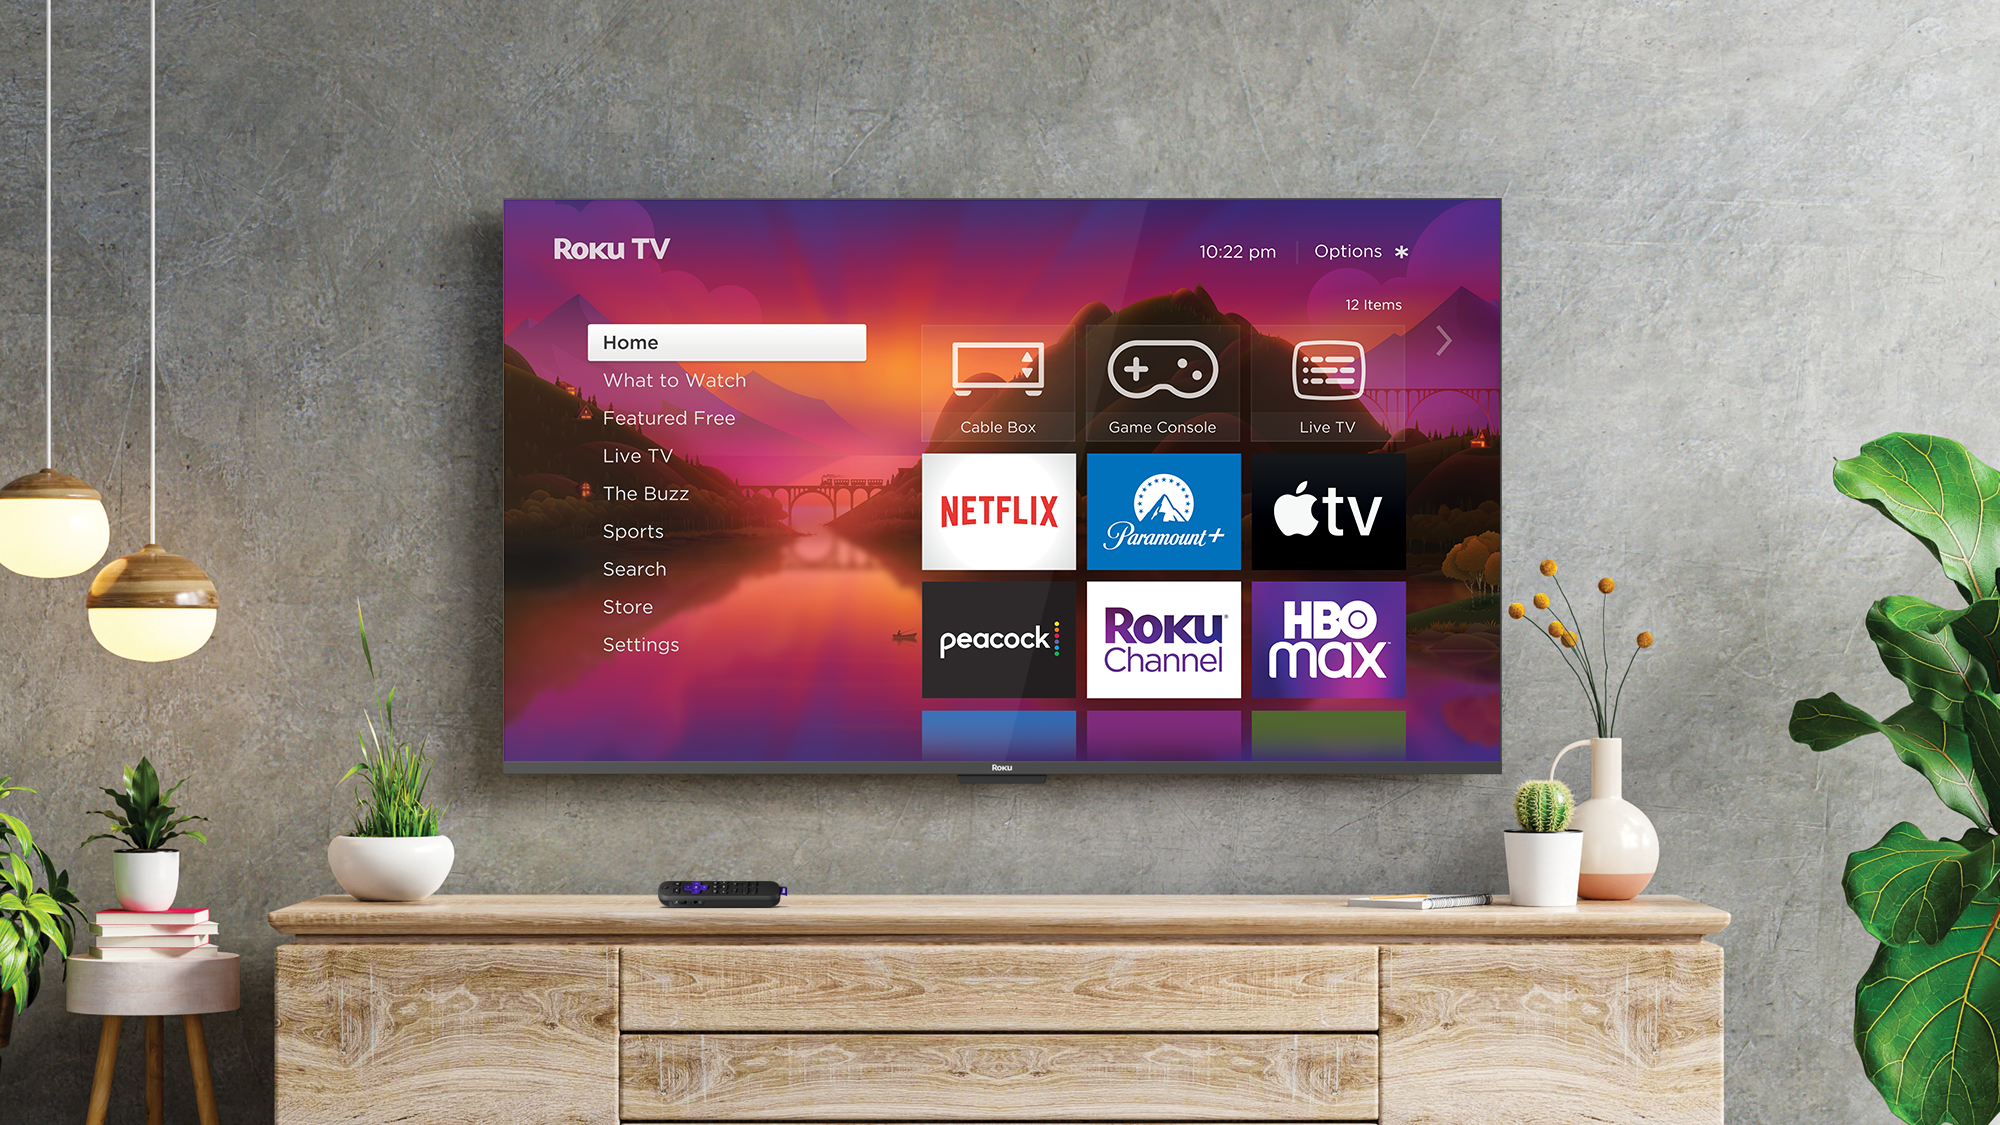 Cuidado con Amazon: Roku ampliará la línea de hardware con televisores de la marca Roku